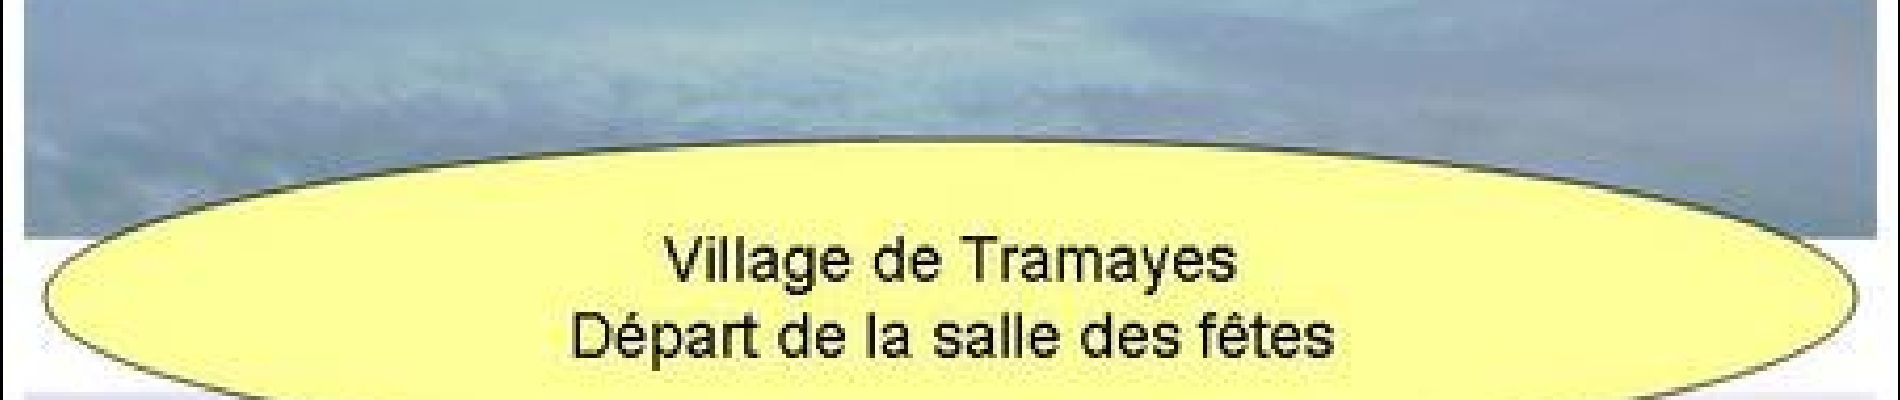 Trail Mountain bike Tramayes - 5ème Trans de La Mère Boîtier (Edition VTT 2012 - Revisitée) - Tramayes - Photo